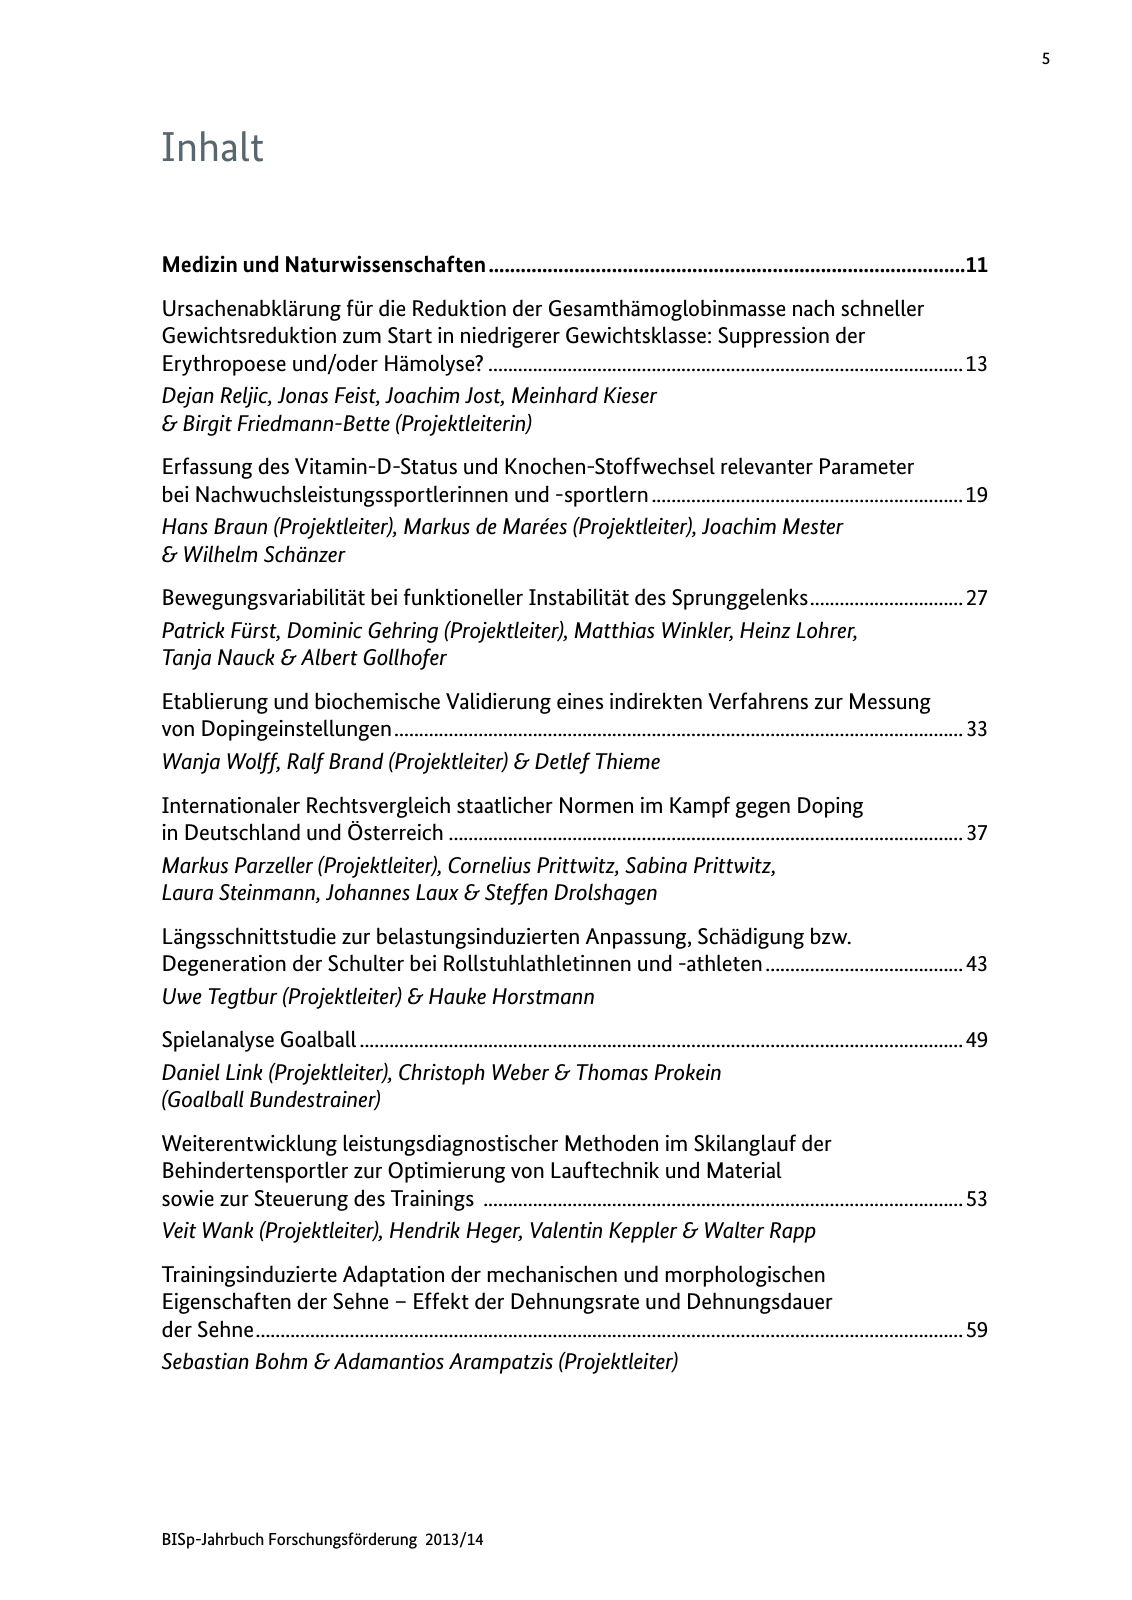 Vorschau BISp-Jahrbuch Forschungsförderung 2013/14 Seite 6